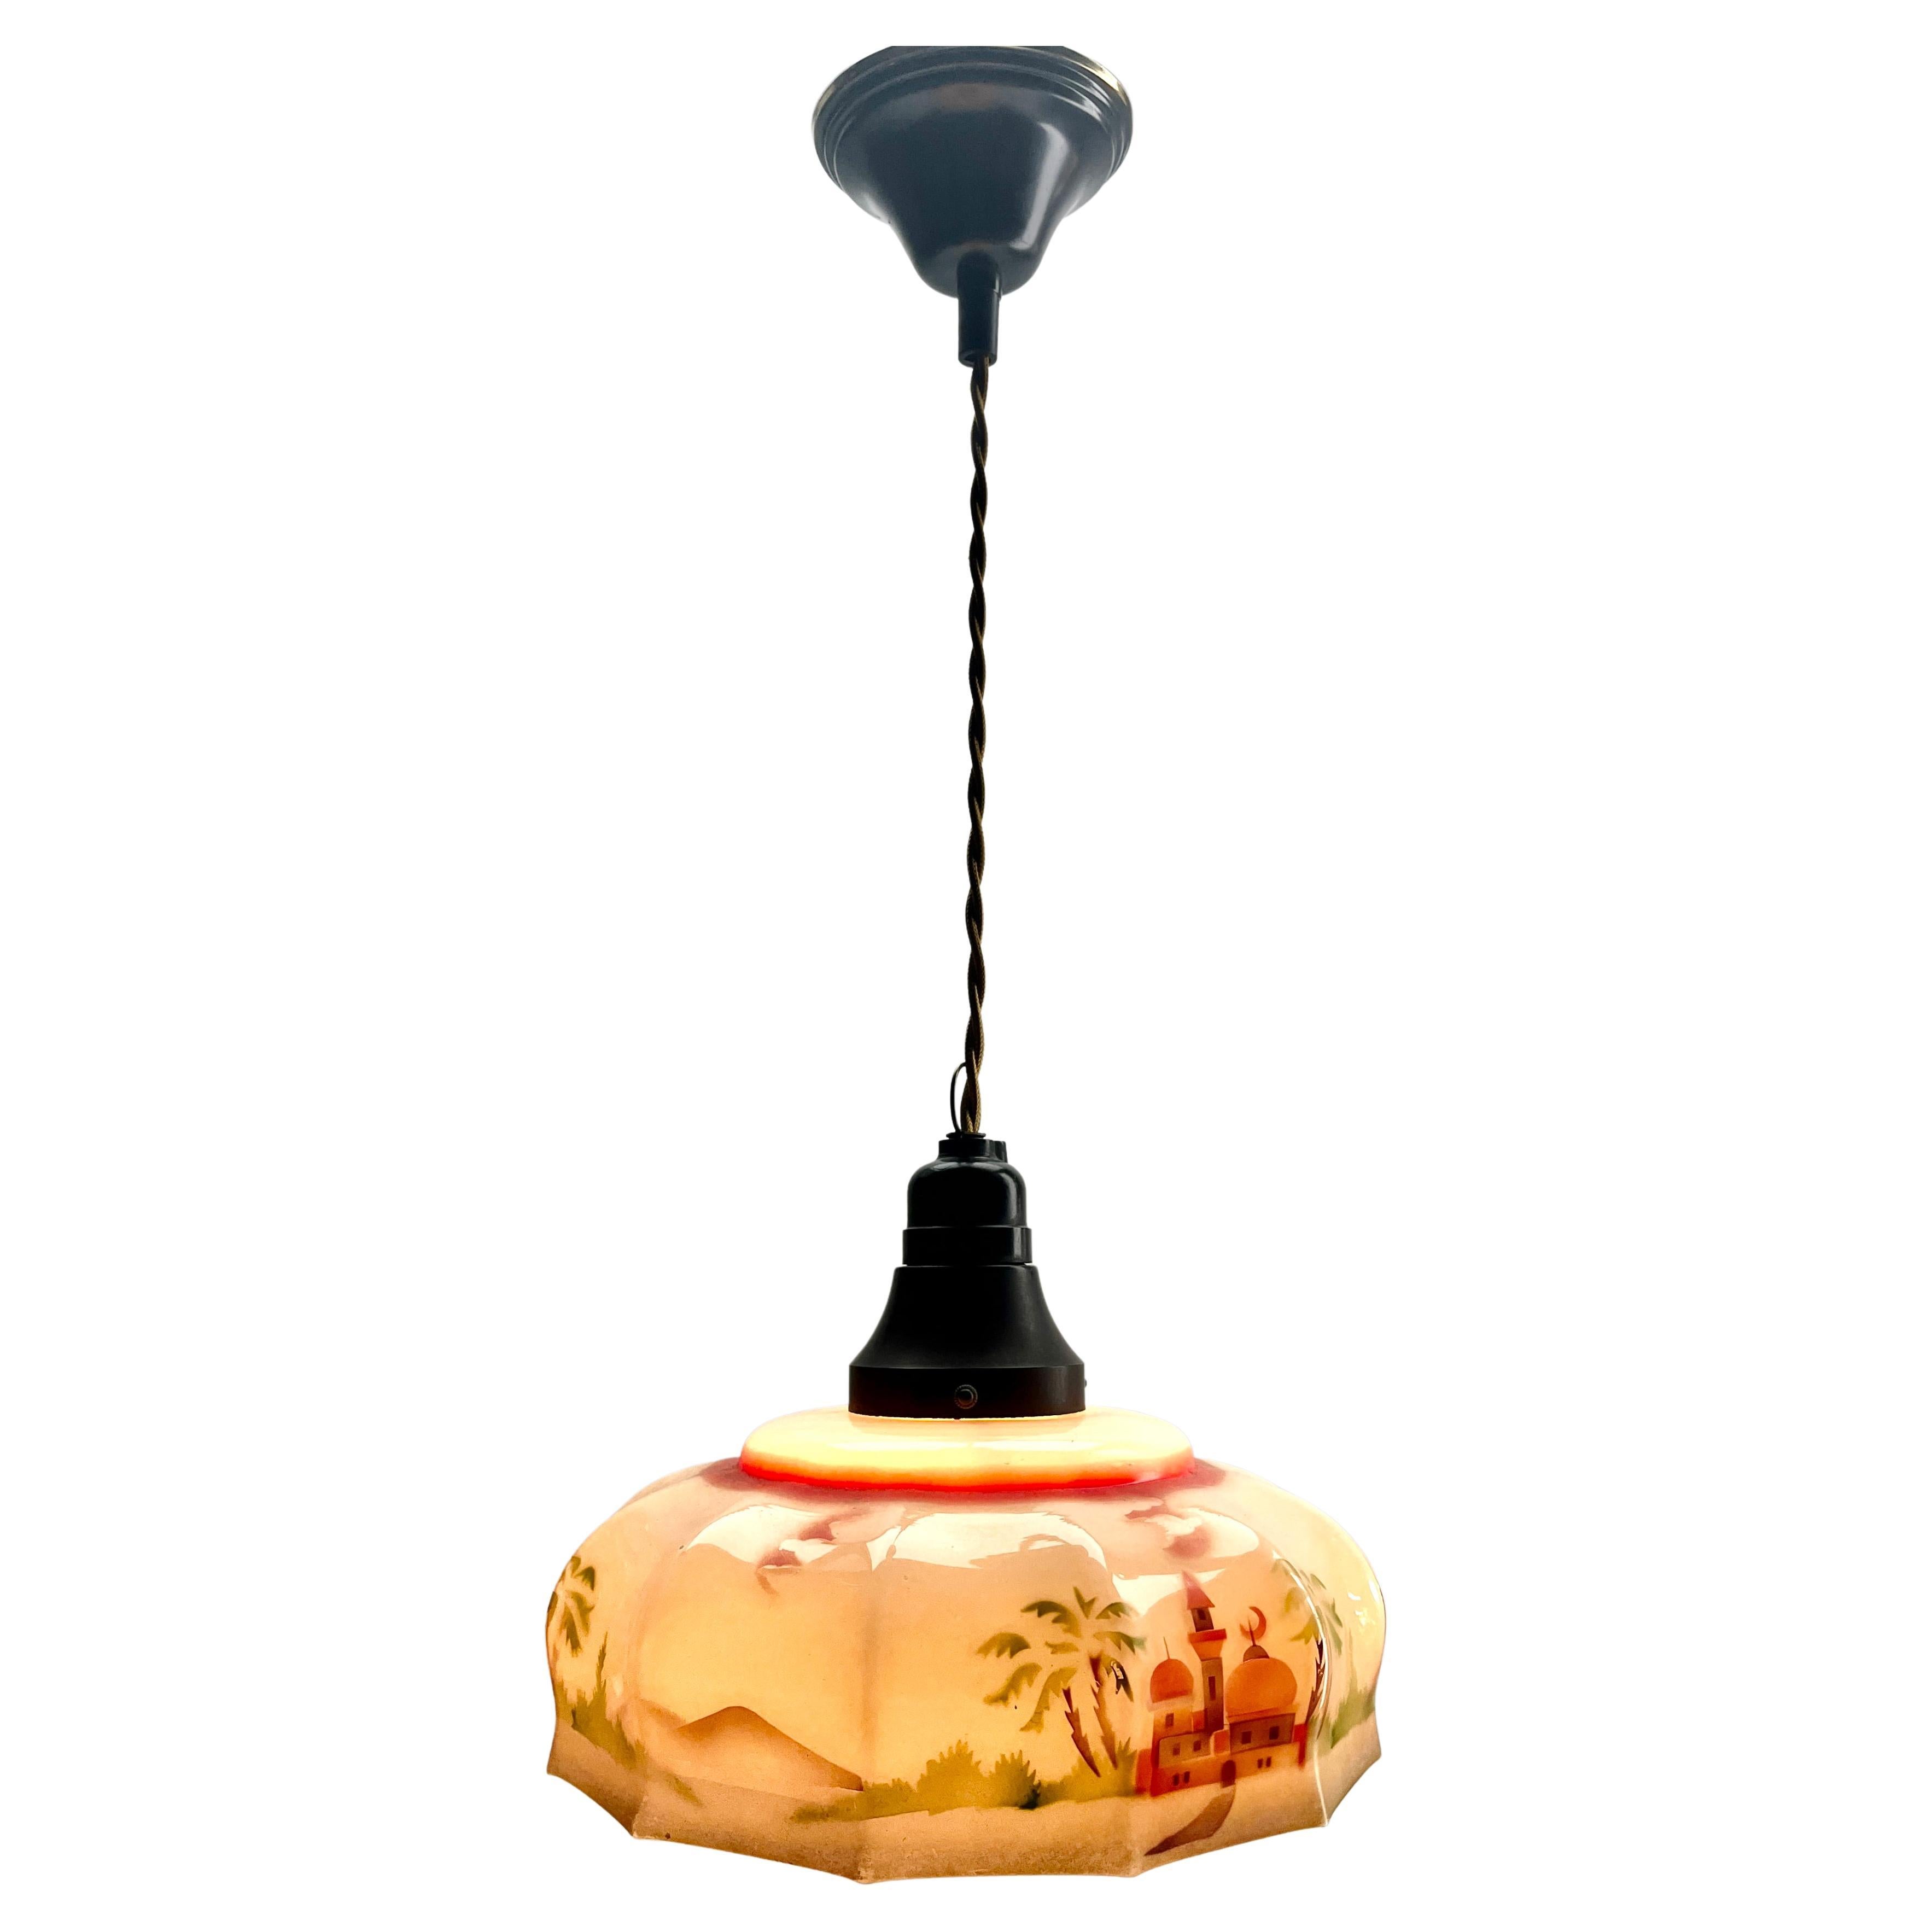 Art Glass Art Deco Ceiling Lamp Bakelite fitting E27 Scailmont Belgium Glass Shade, 1930s For Sale